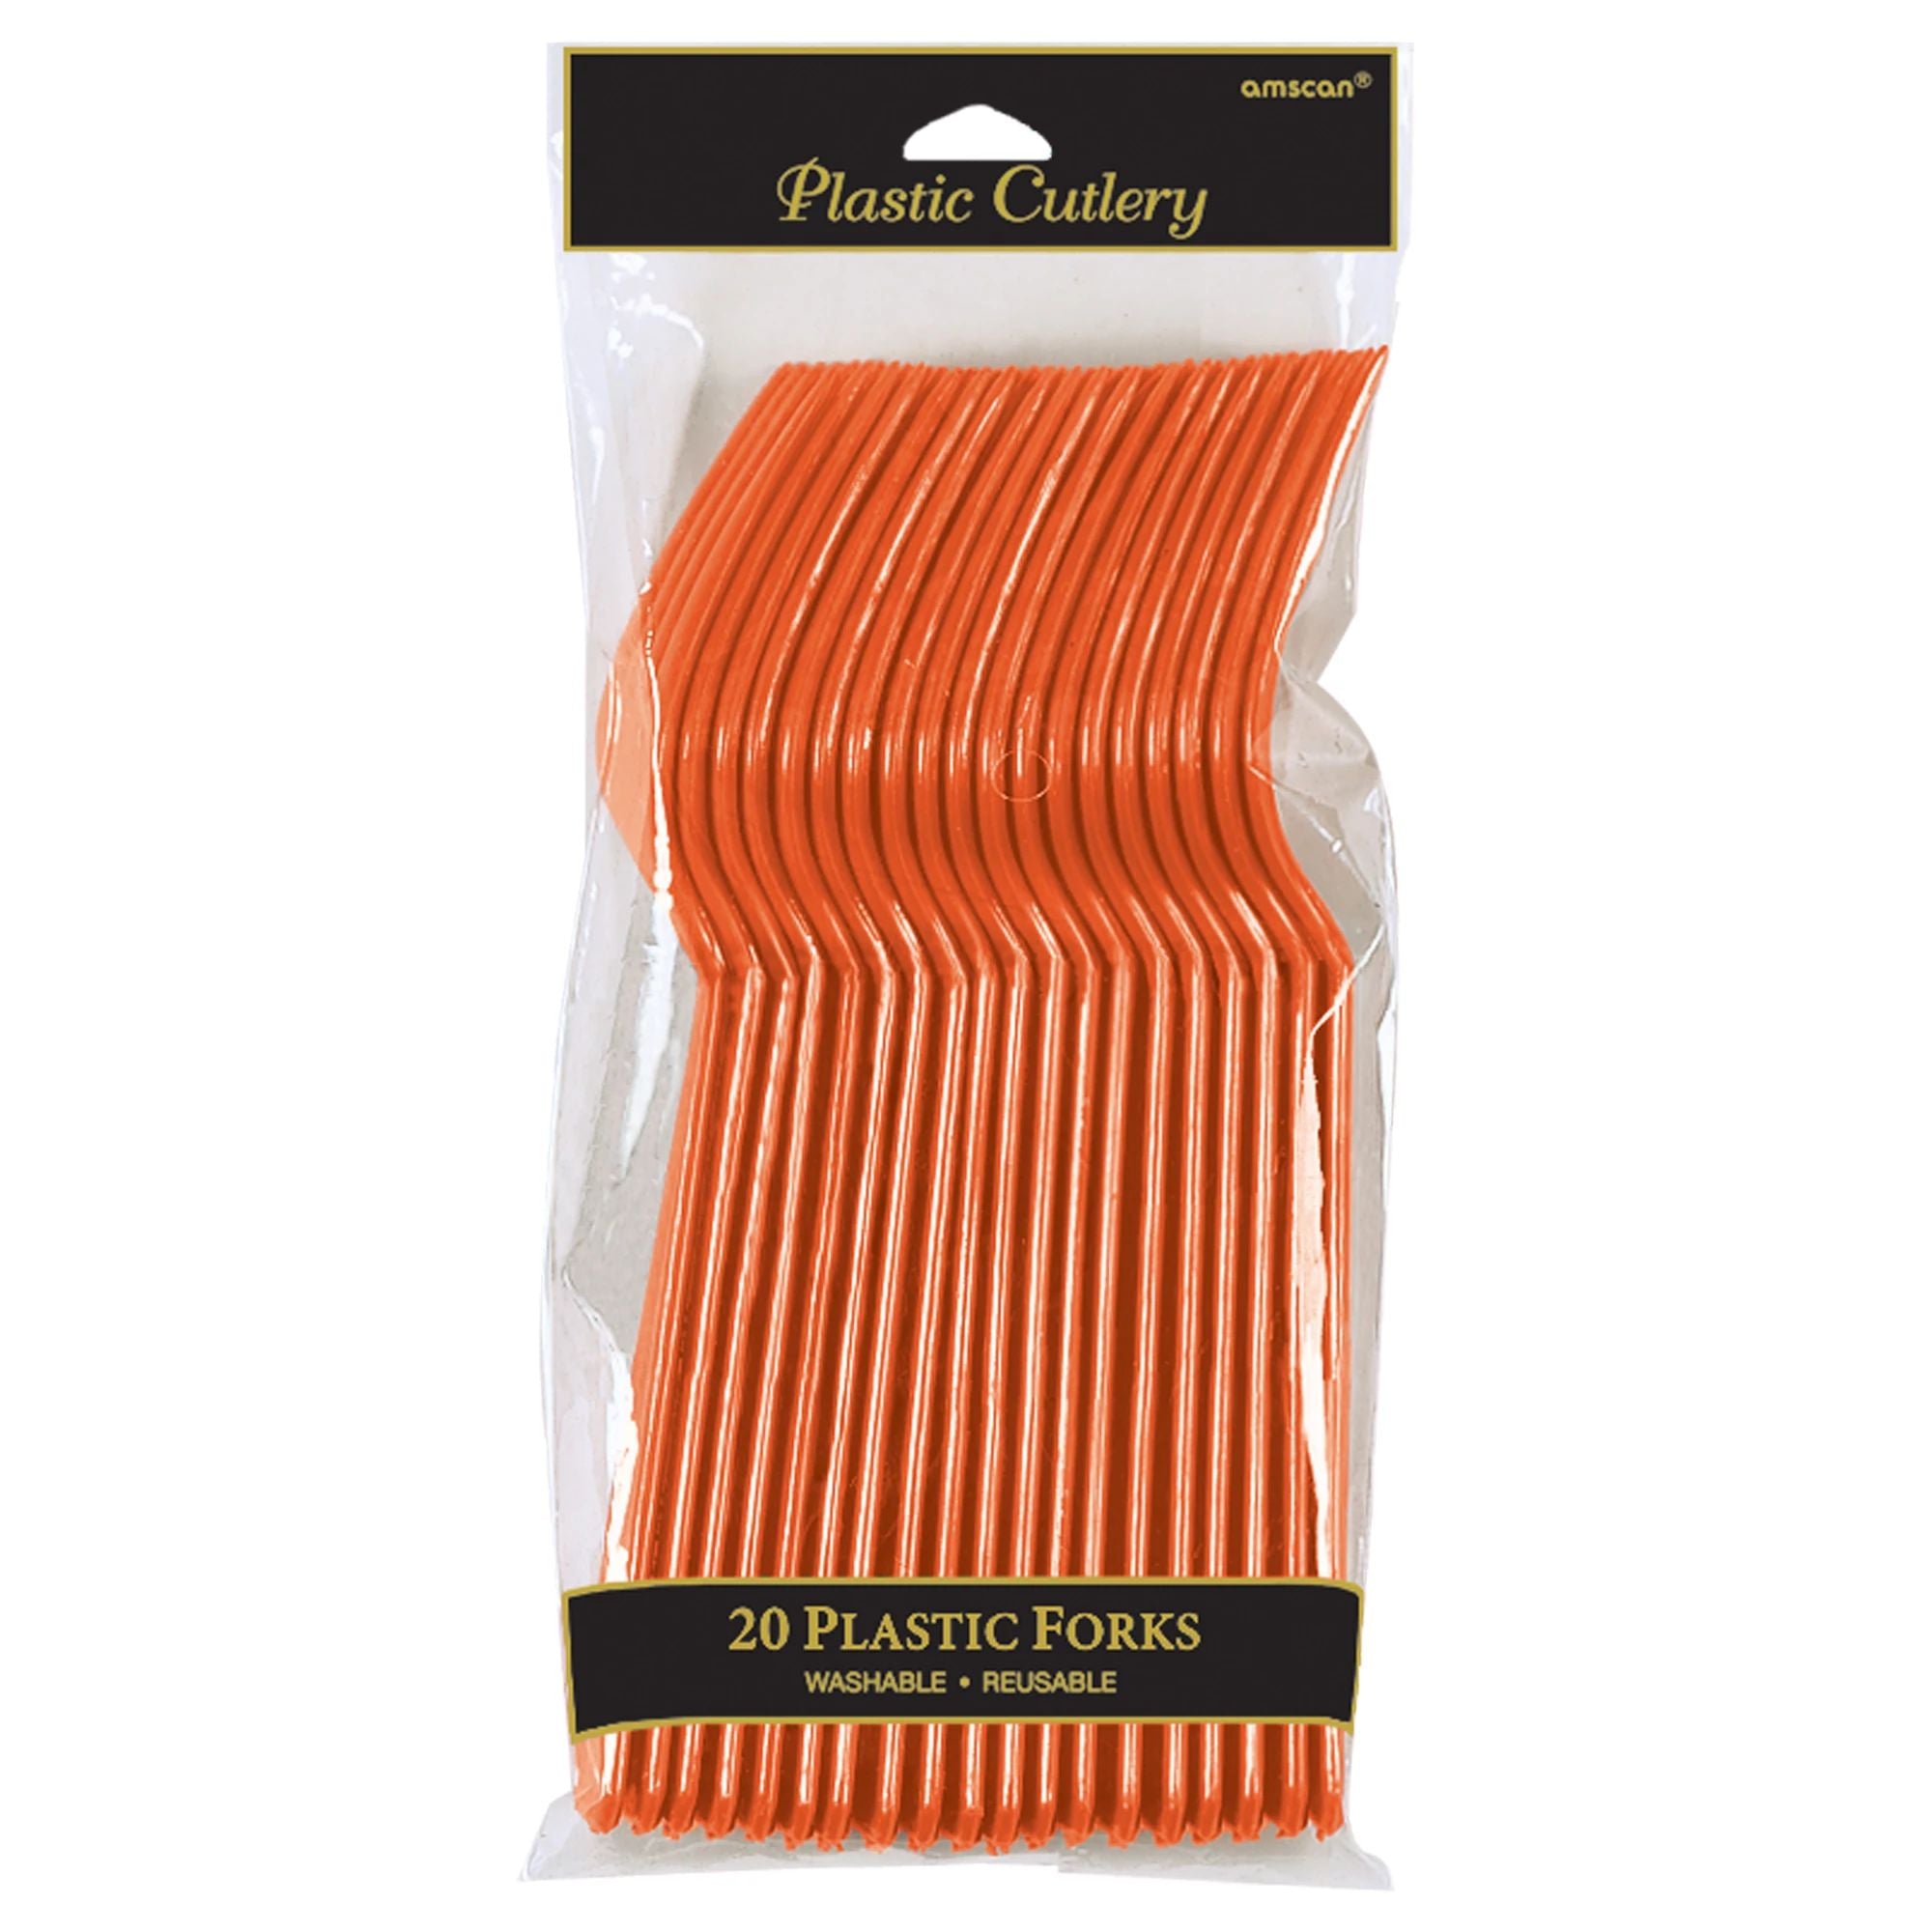 Plastic Forks - Orange Peel - 20CT